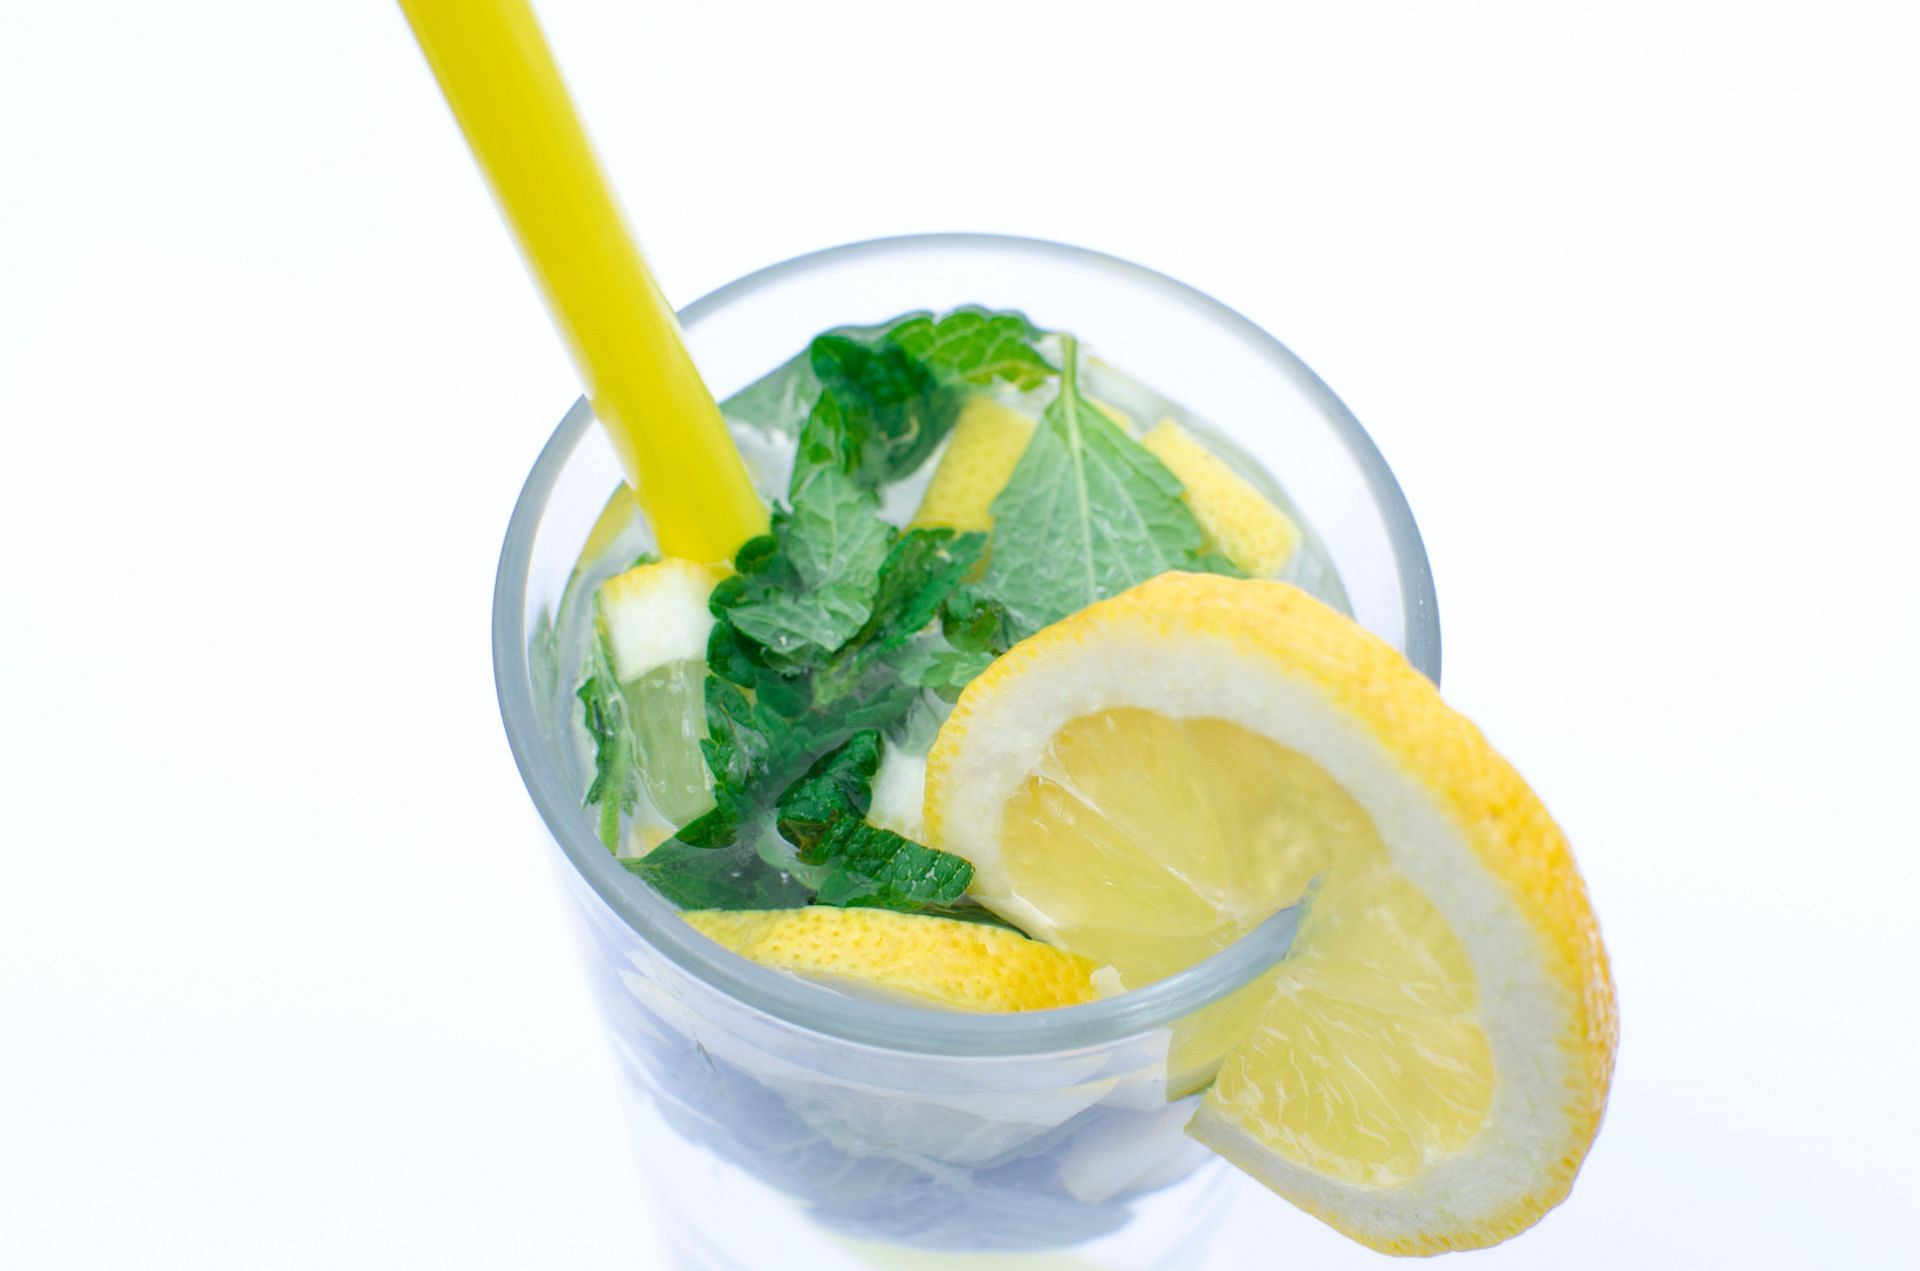 Lemon water may help prevent kidney stones. (Image via Pexels/Lukas)